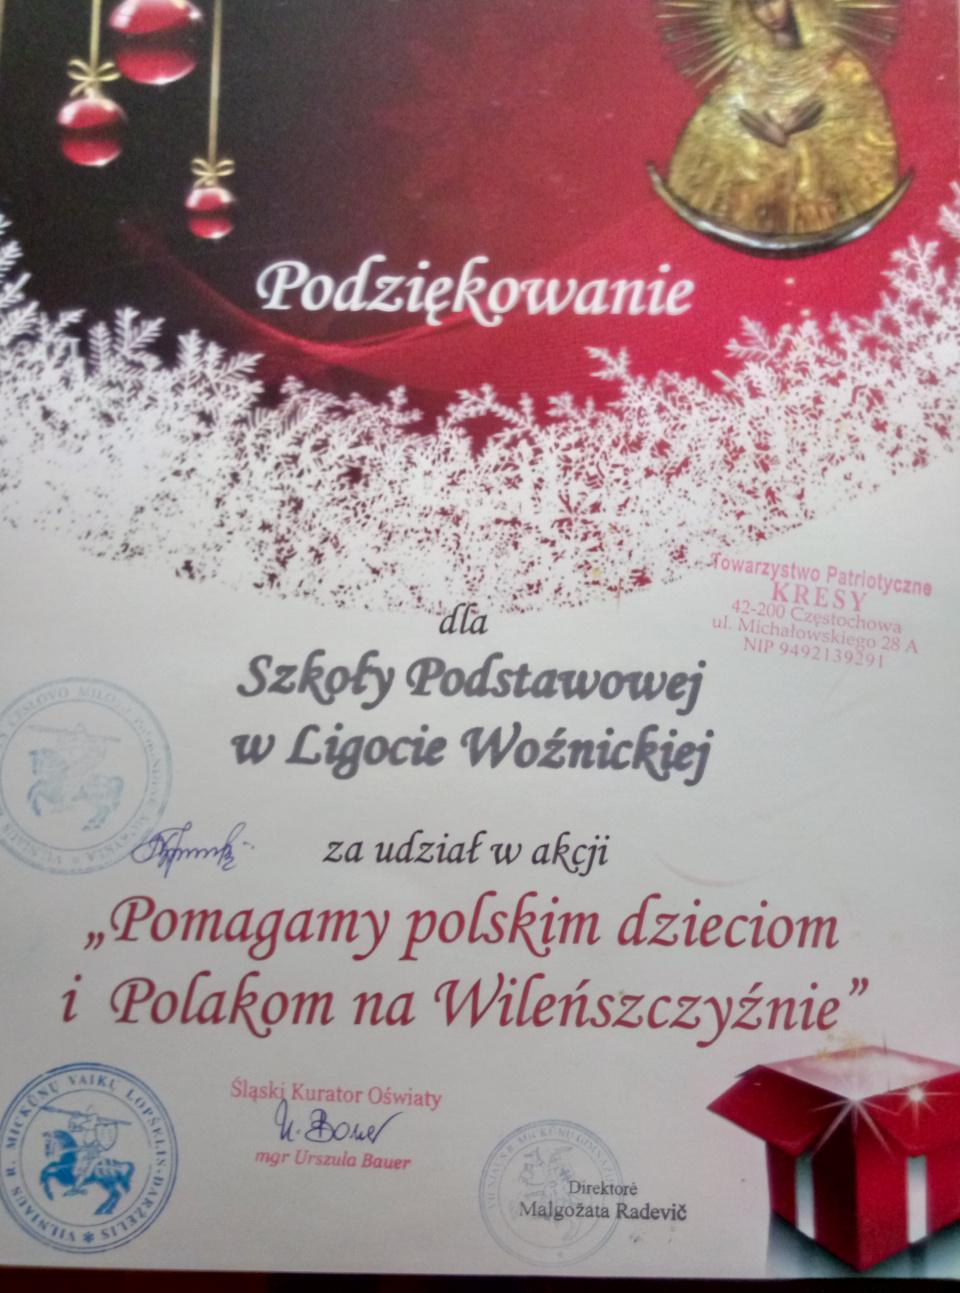 Podziękowanie za udział w akcji "Mikołaj z Polakami na Wileńszczyźnie"